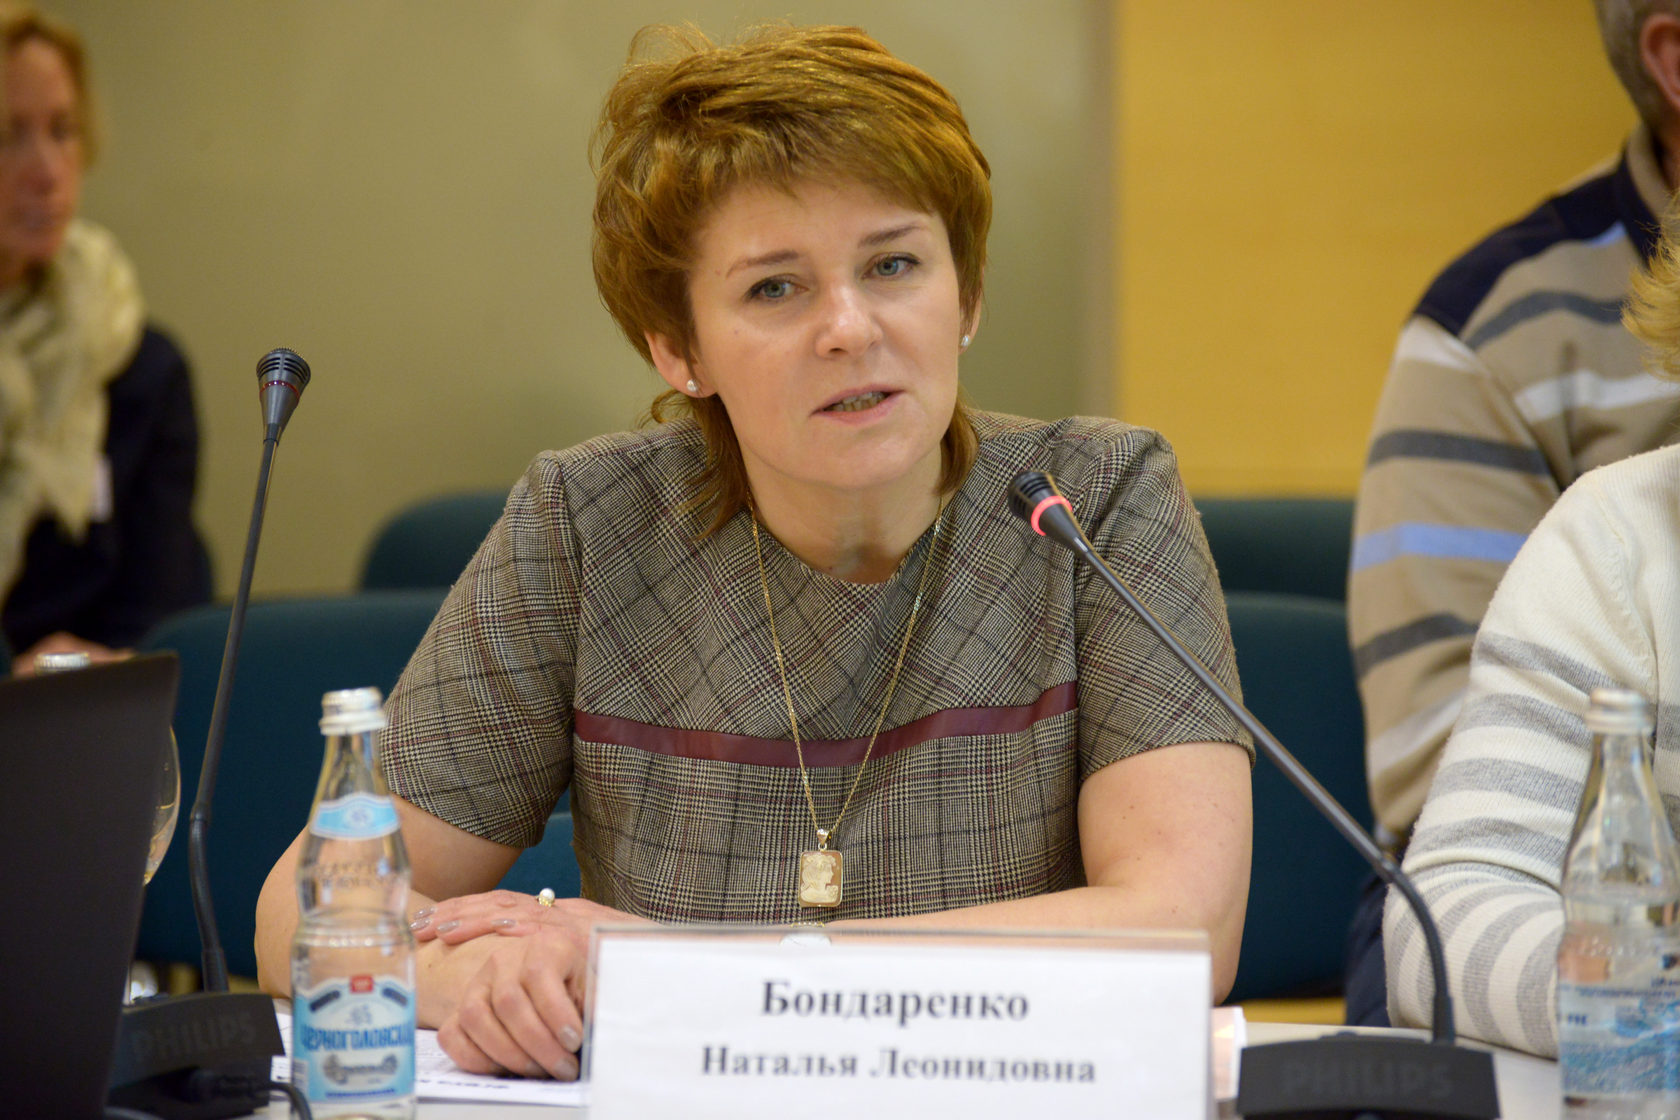 Ольга Петровна Бондаренко